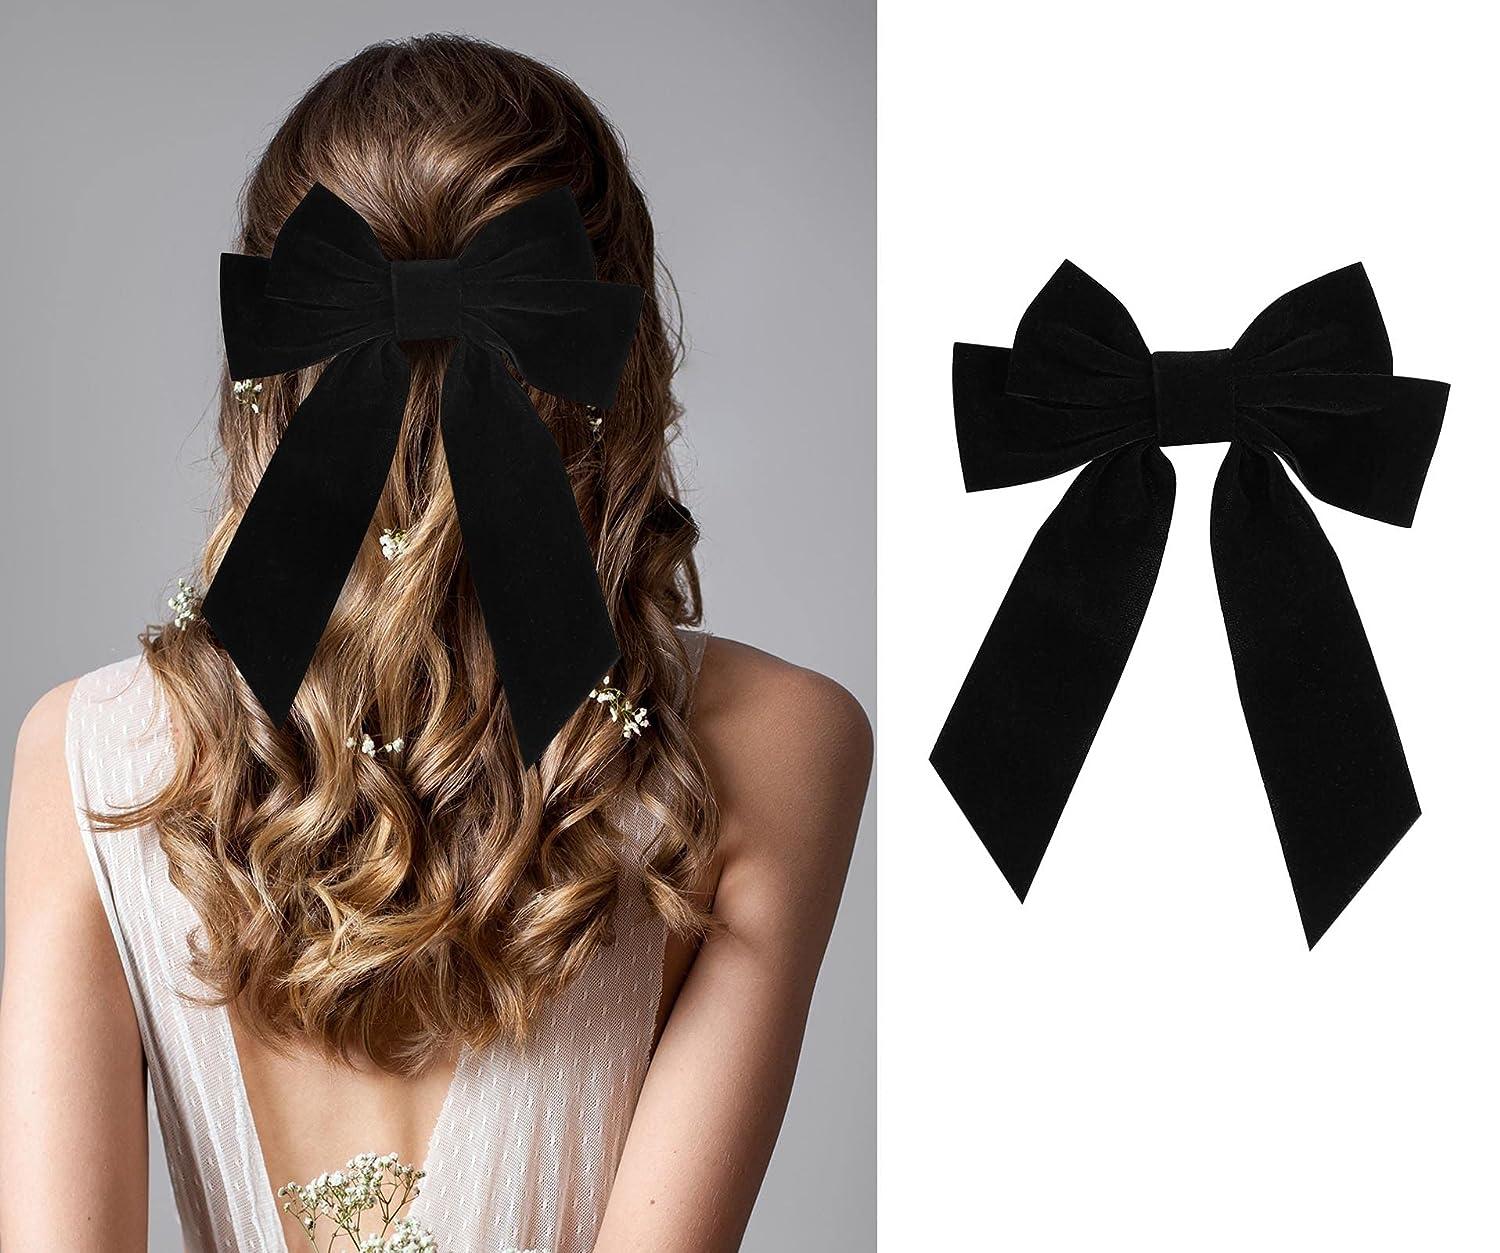 Big Hair Bows for Women Girl 7 Velvet Black Hair Clip Accessories